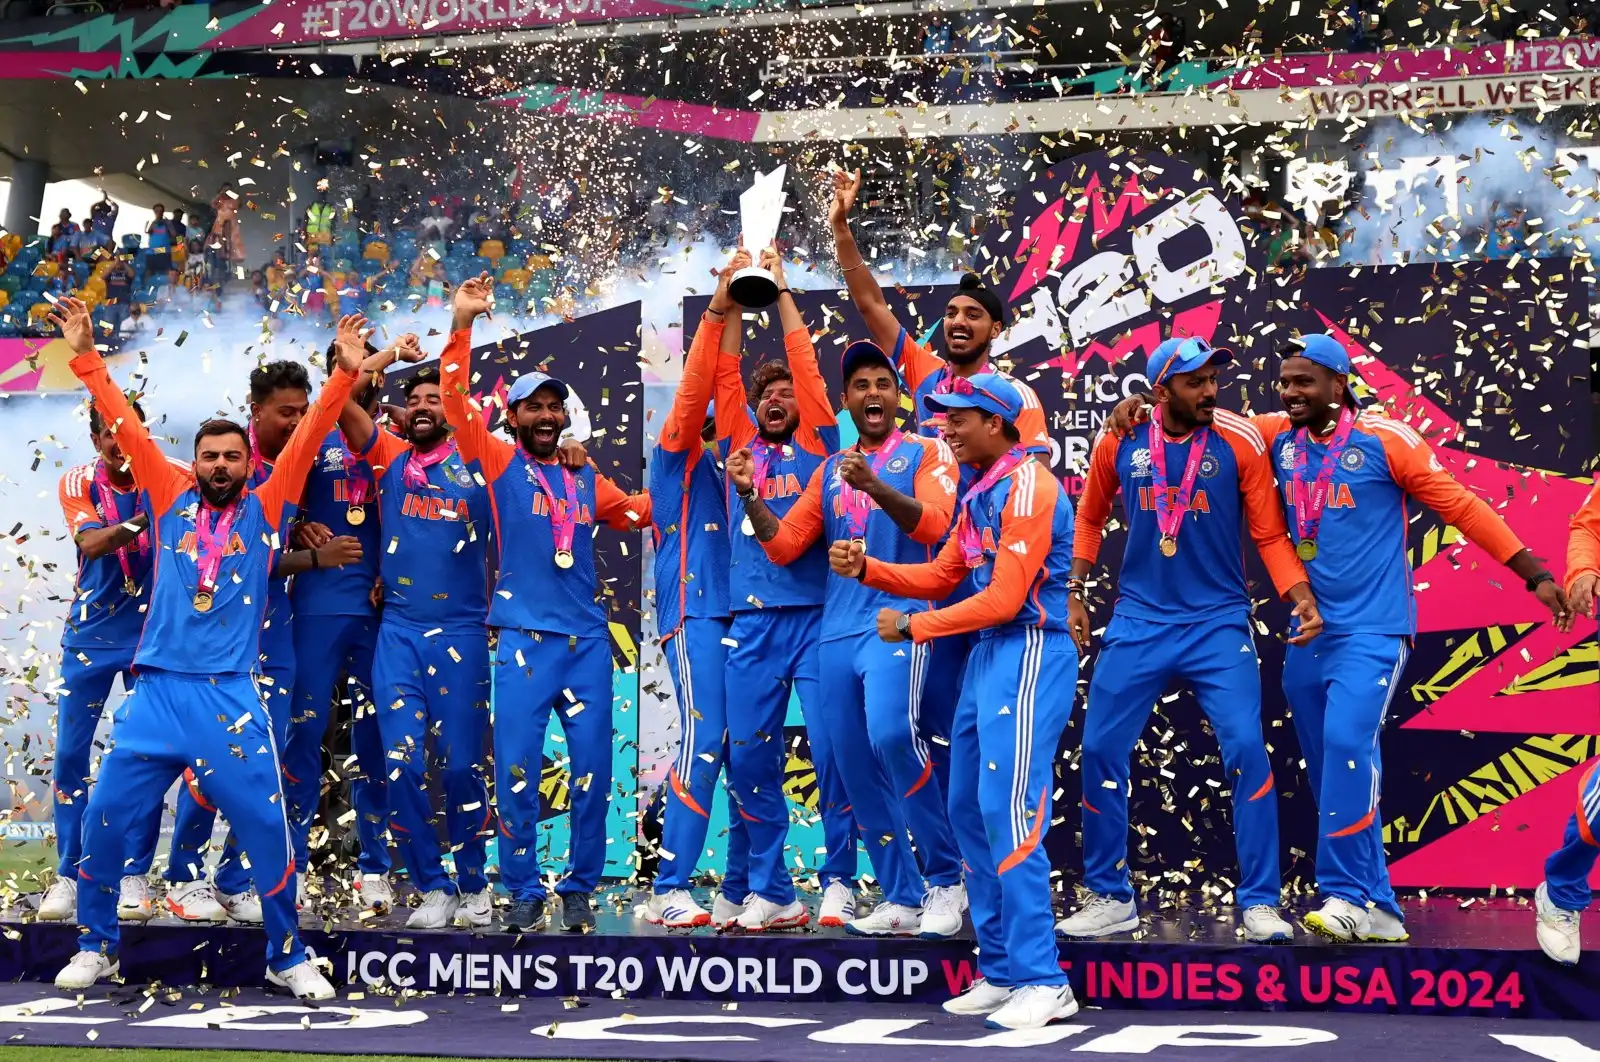 India inspira la victoria en la Copa Mundial de cricket T20 y une la alegría del país